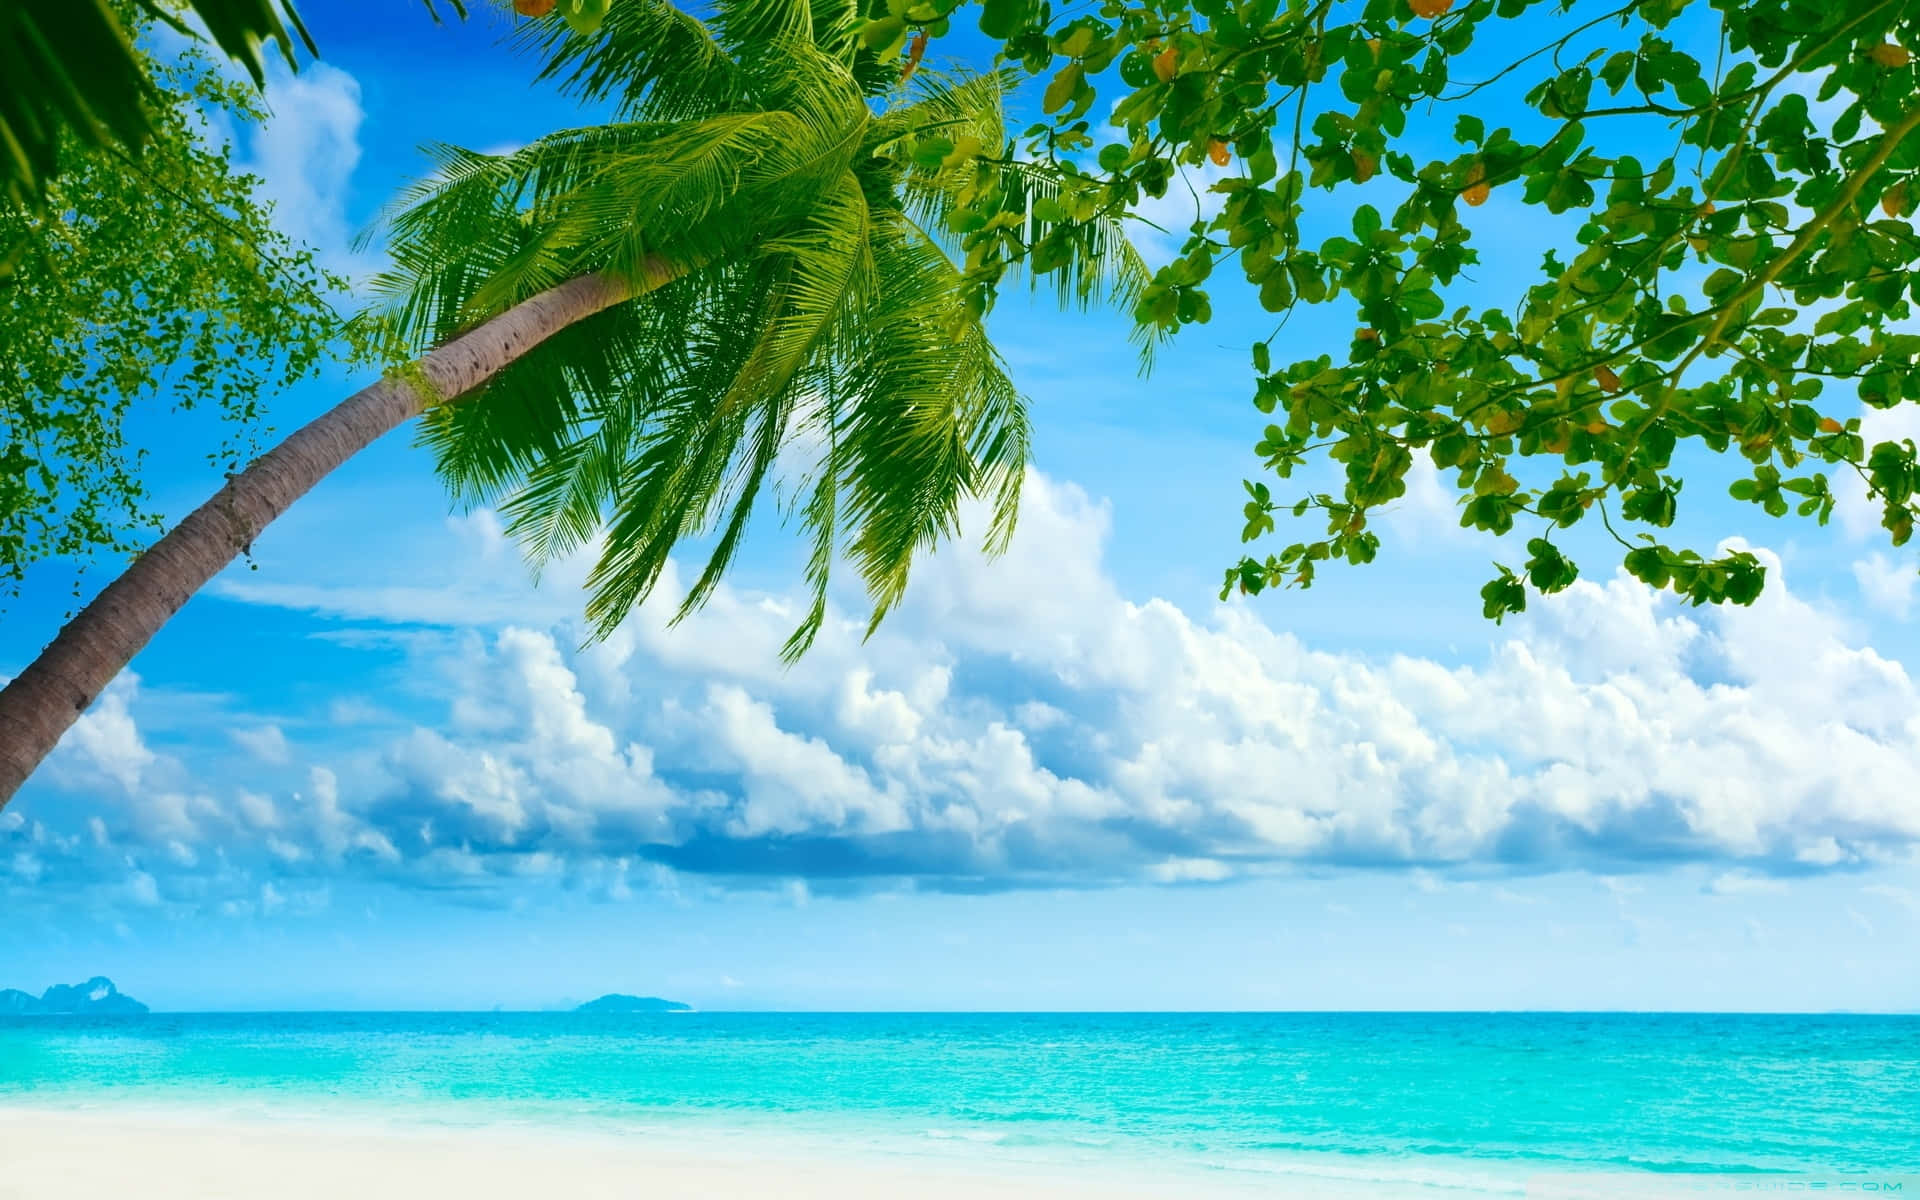 Enotroligt Vacker Tropisk Strandbild Med Strandhyddor, Palmträd Och Kristallblått Vatten. Wallpaper